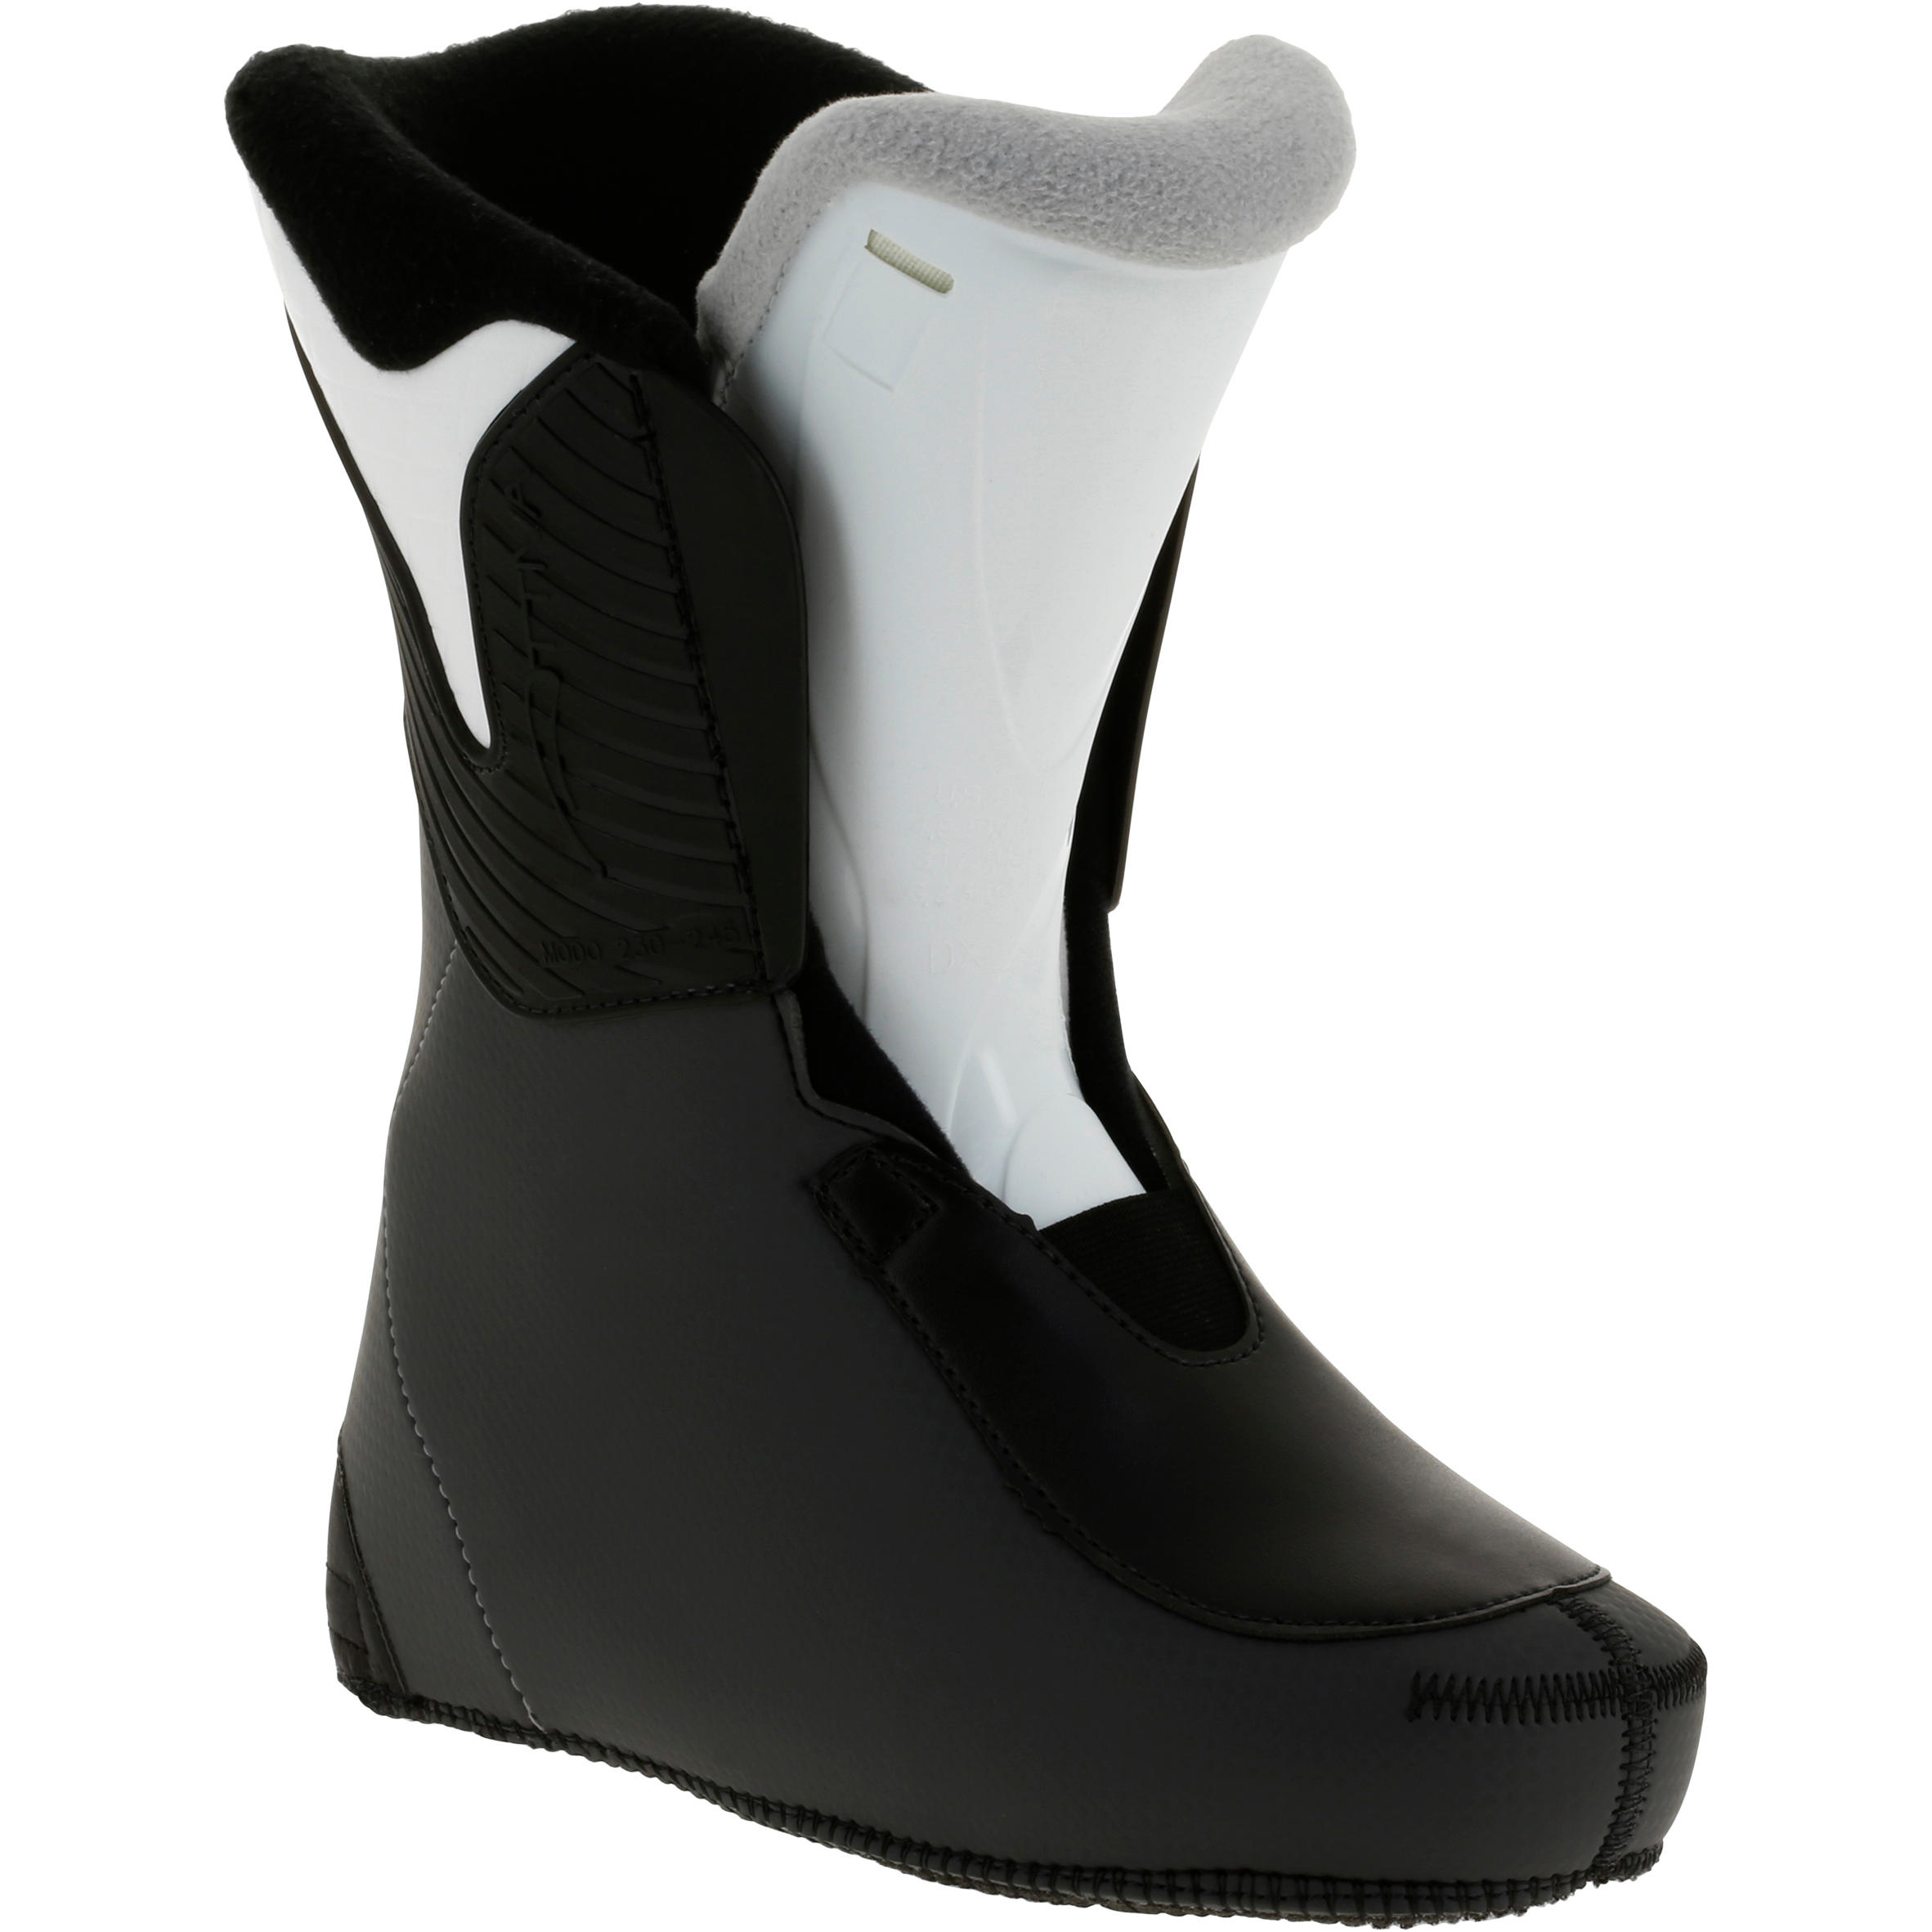 WID 50 Women's Ski Boots - Black 10/11